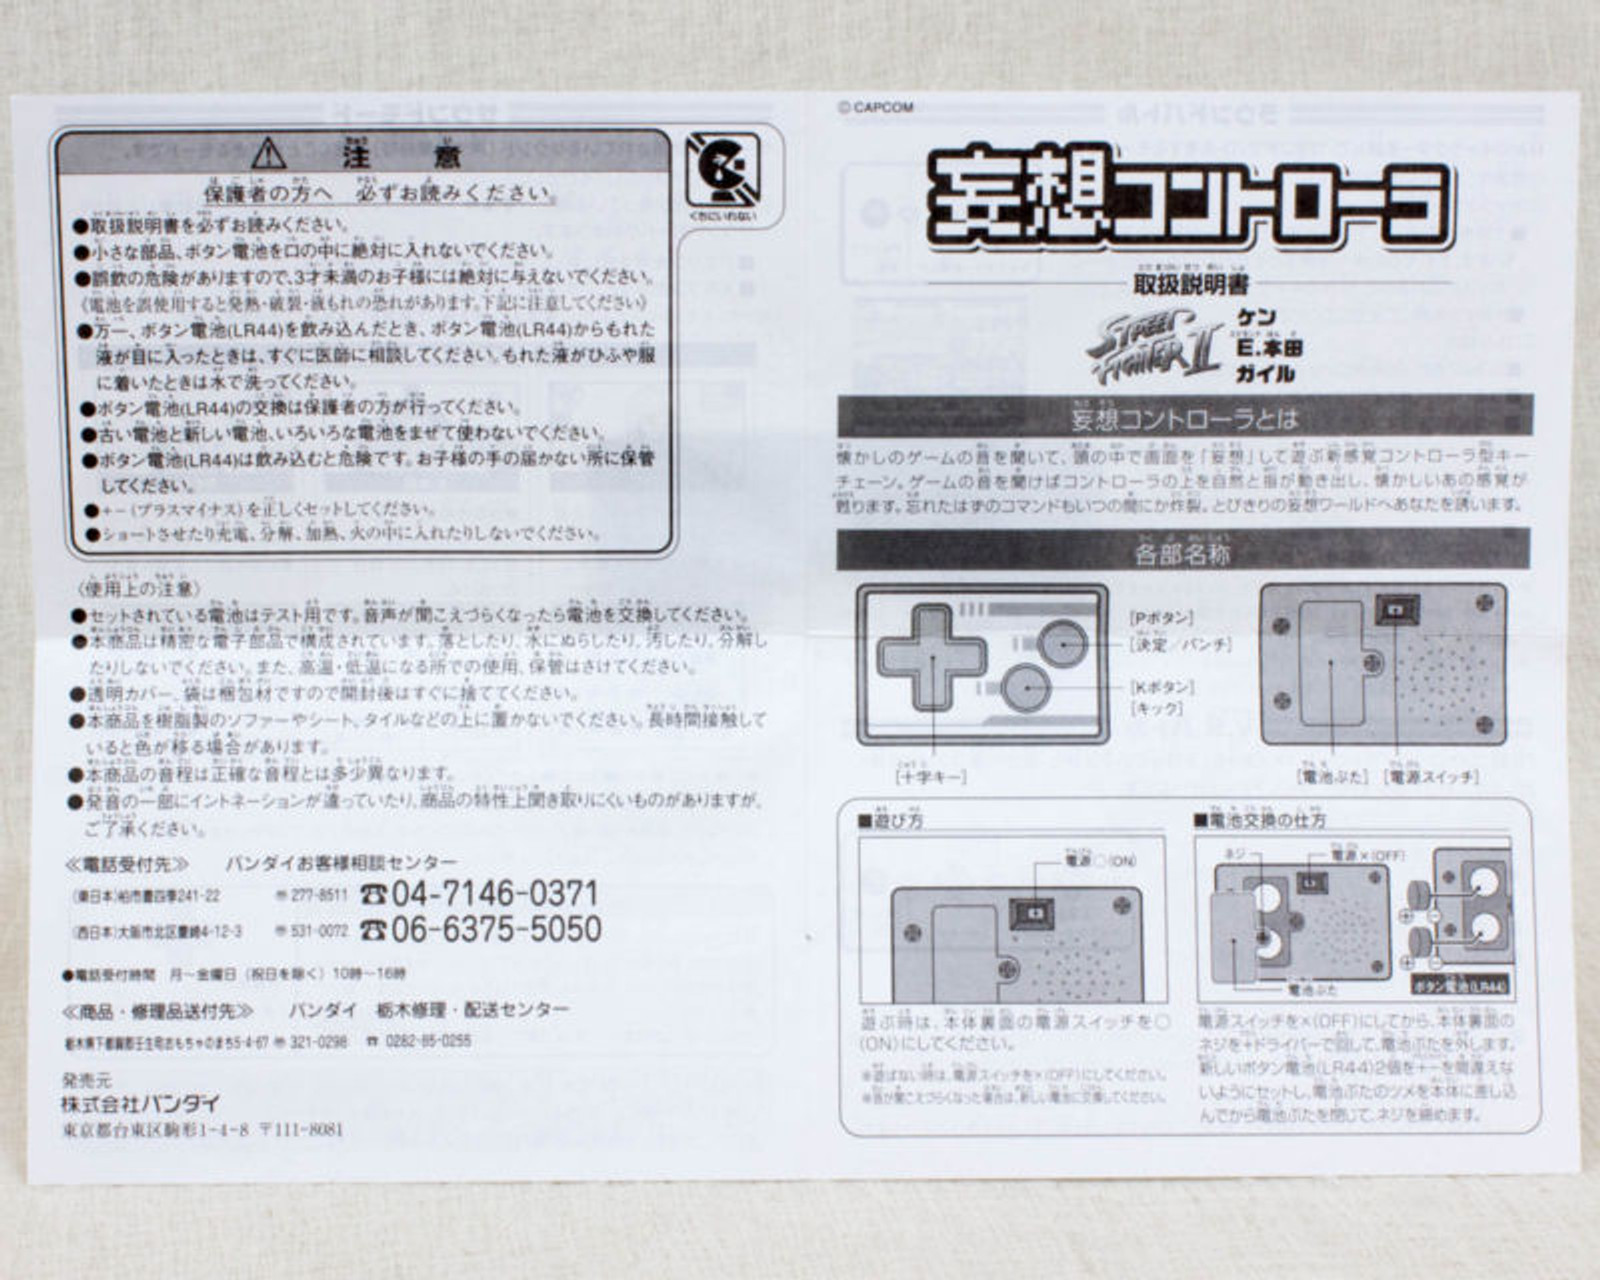 Street Fighter 2 Delusion Controller [Voice: Ken Guile E. Honda] Bandai JAPAN